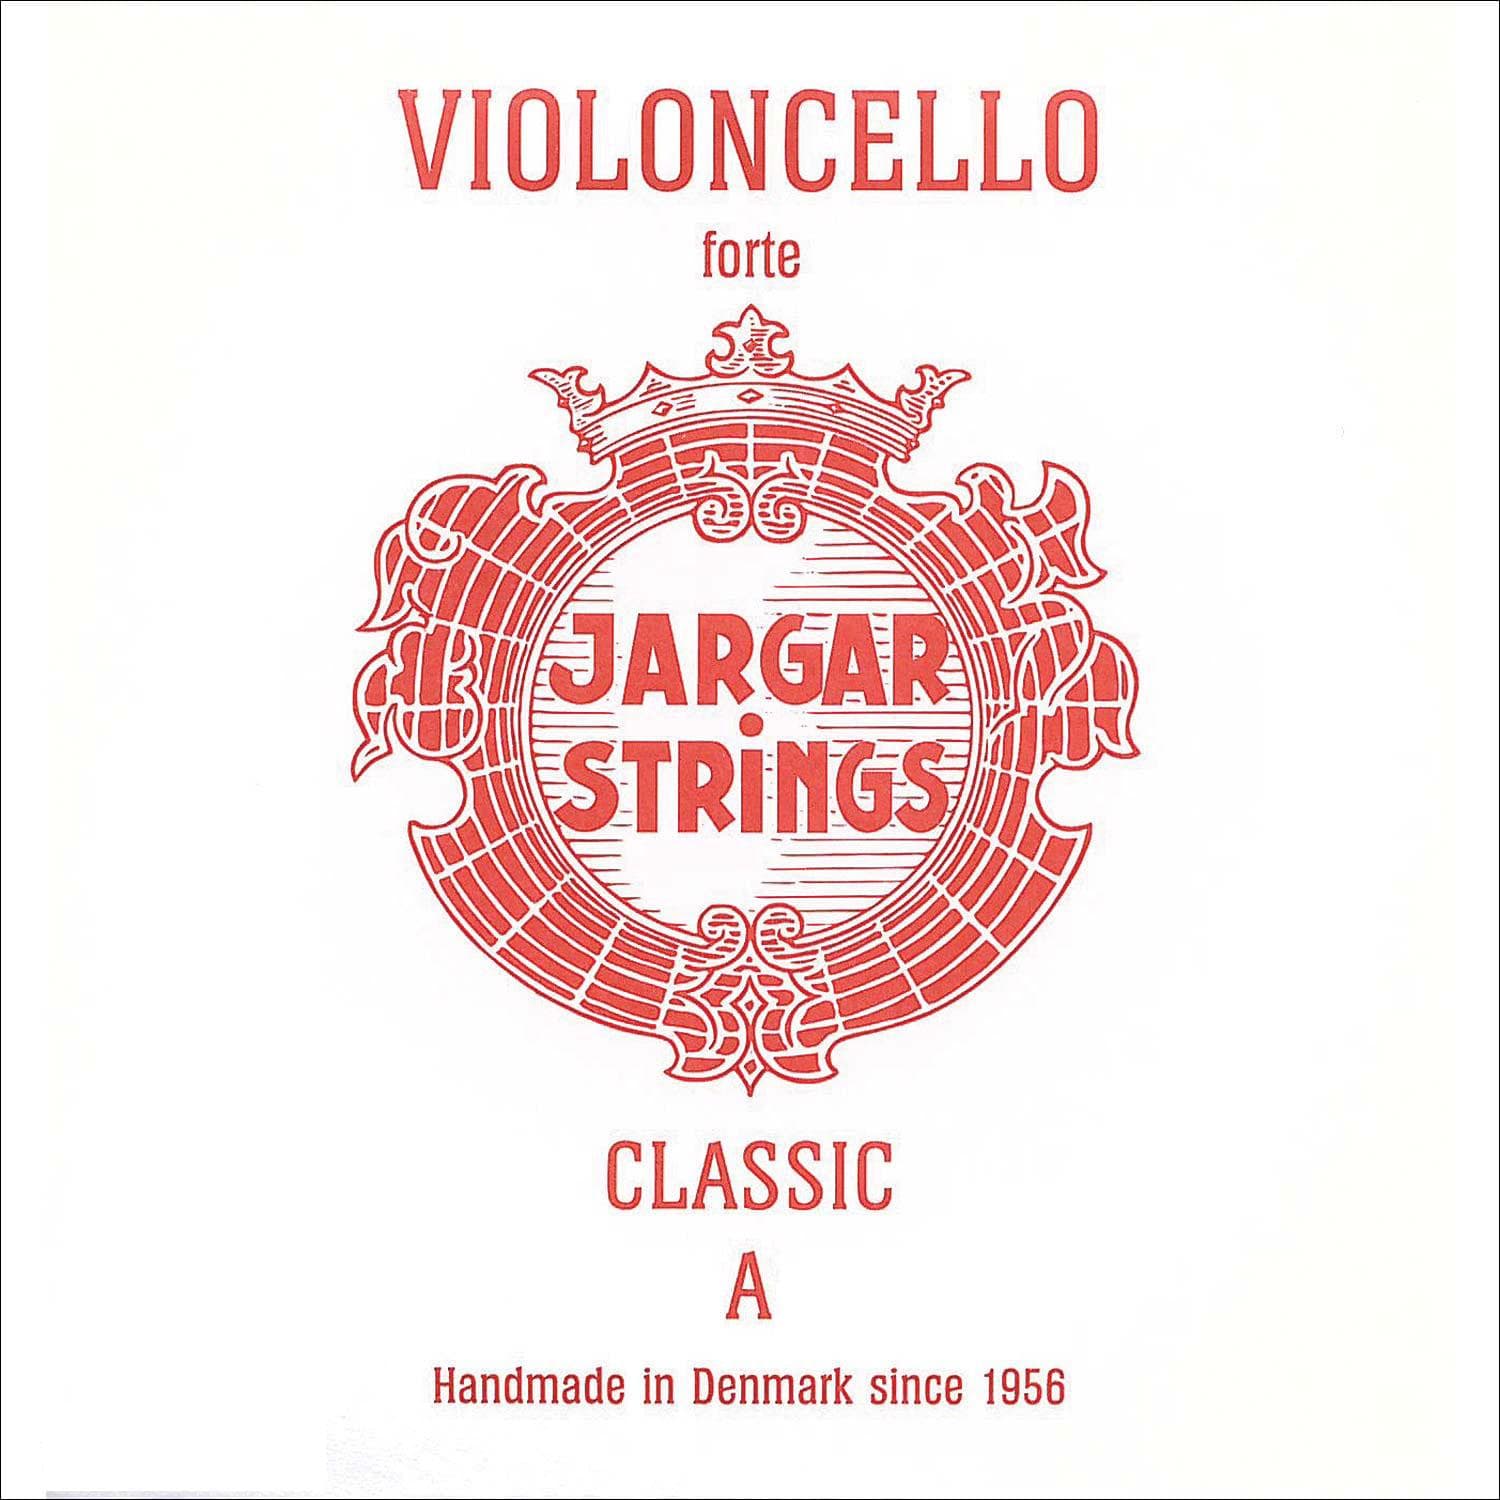 Jargar Cello A String